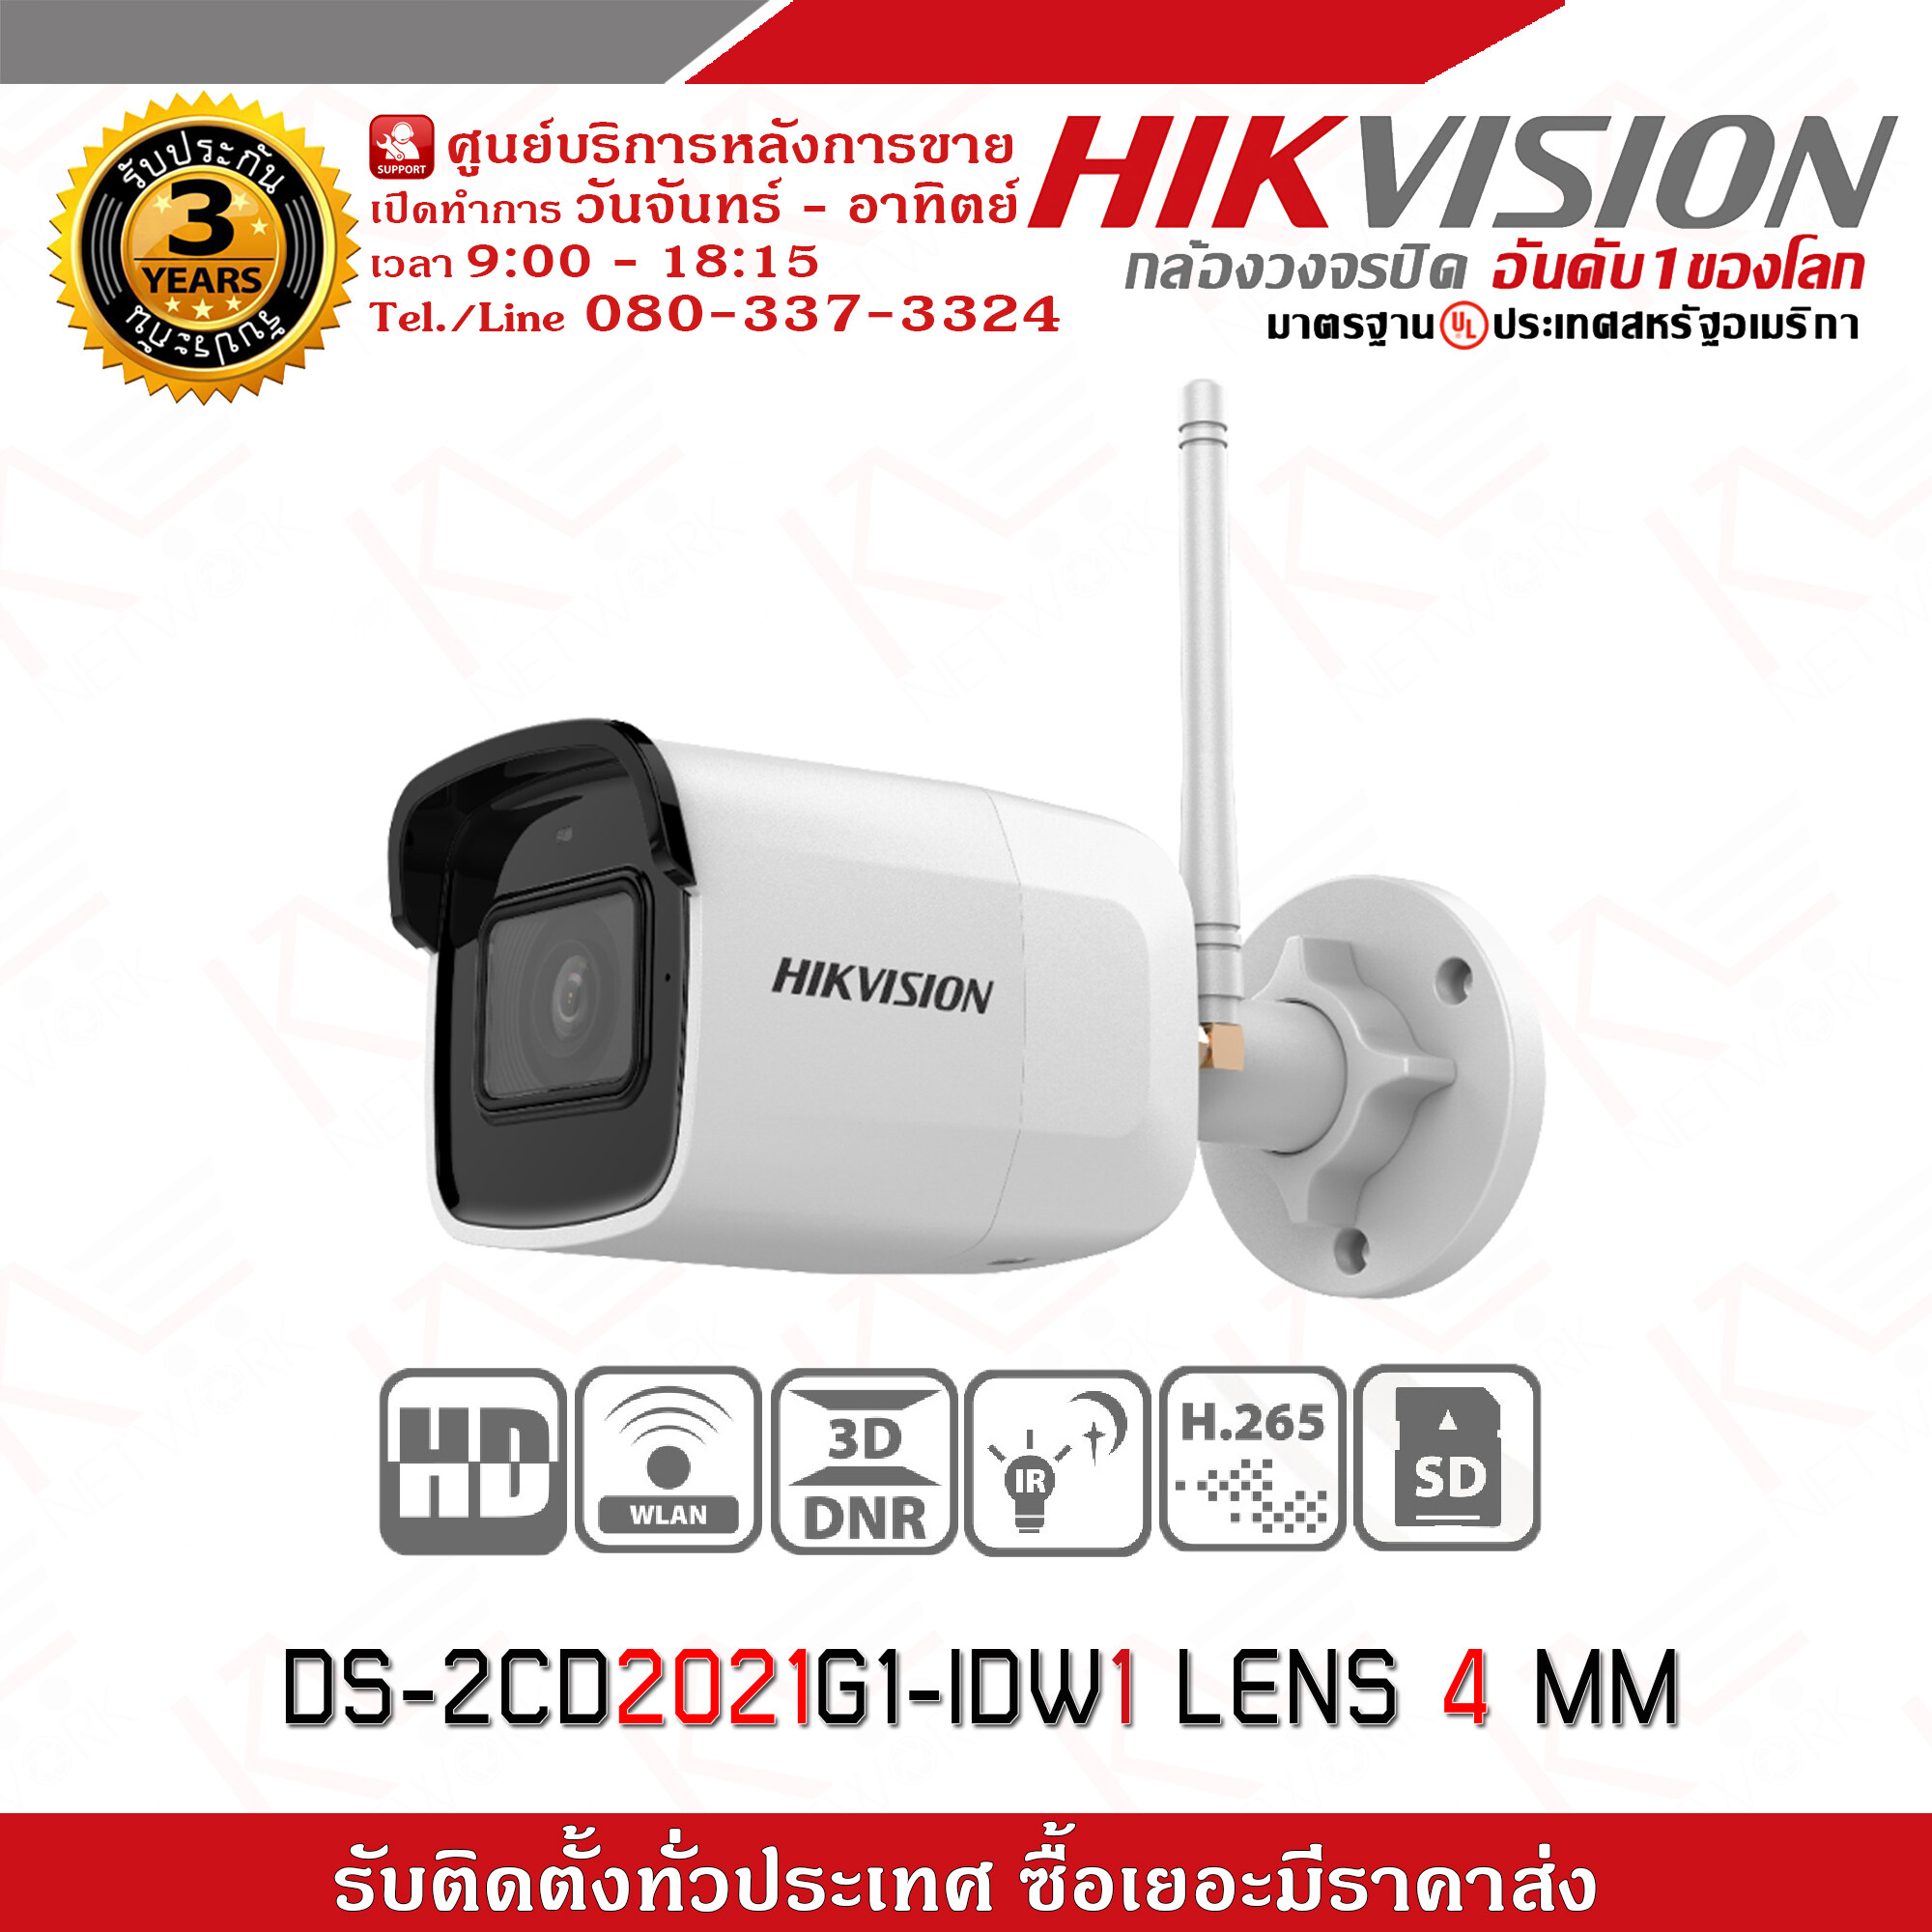 กล้องวงจรปิด HIKVISION รุ่น DS-2CD2021G1-IDW1 Lens 4 mm กล้อง IP รองรับระบบ WIFI ใส่ SD Card ได้ถึง 128 GB รับประกัน 3 ปี